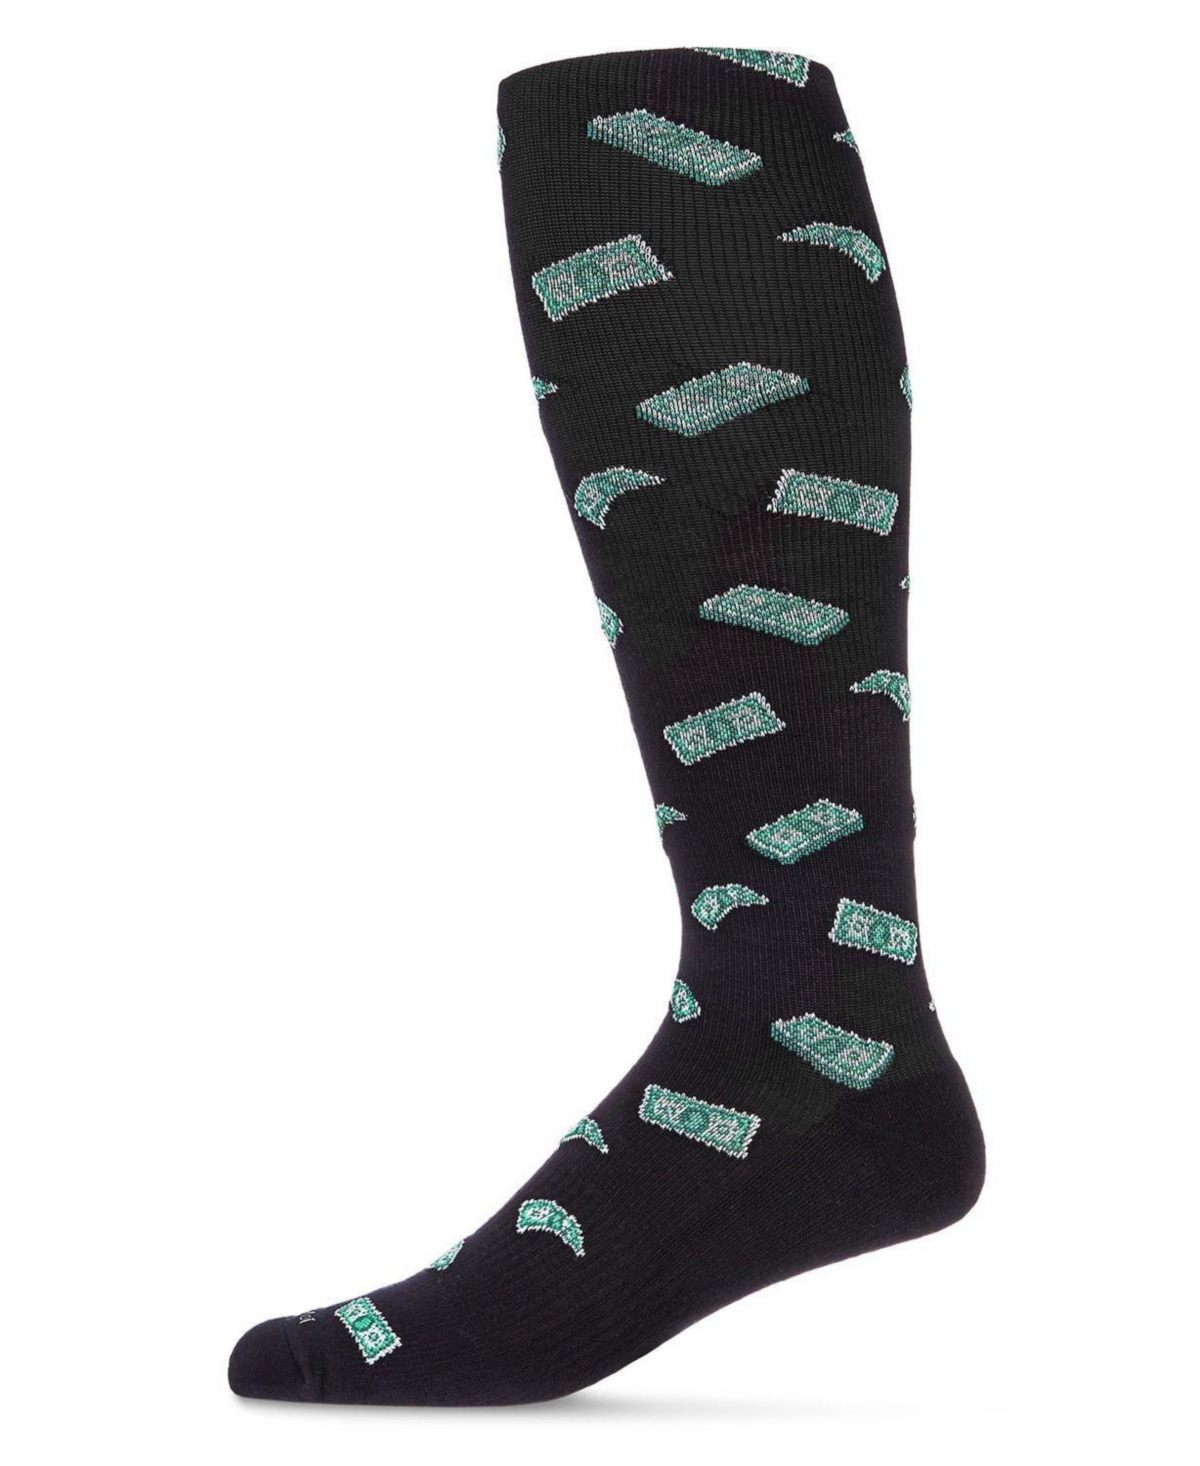 Men's Money Compression Socks - Black